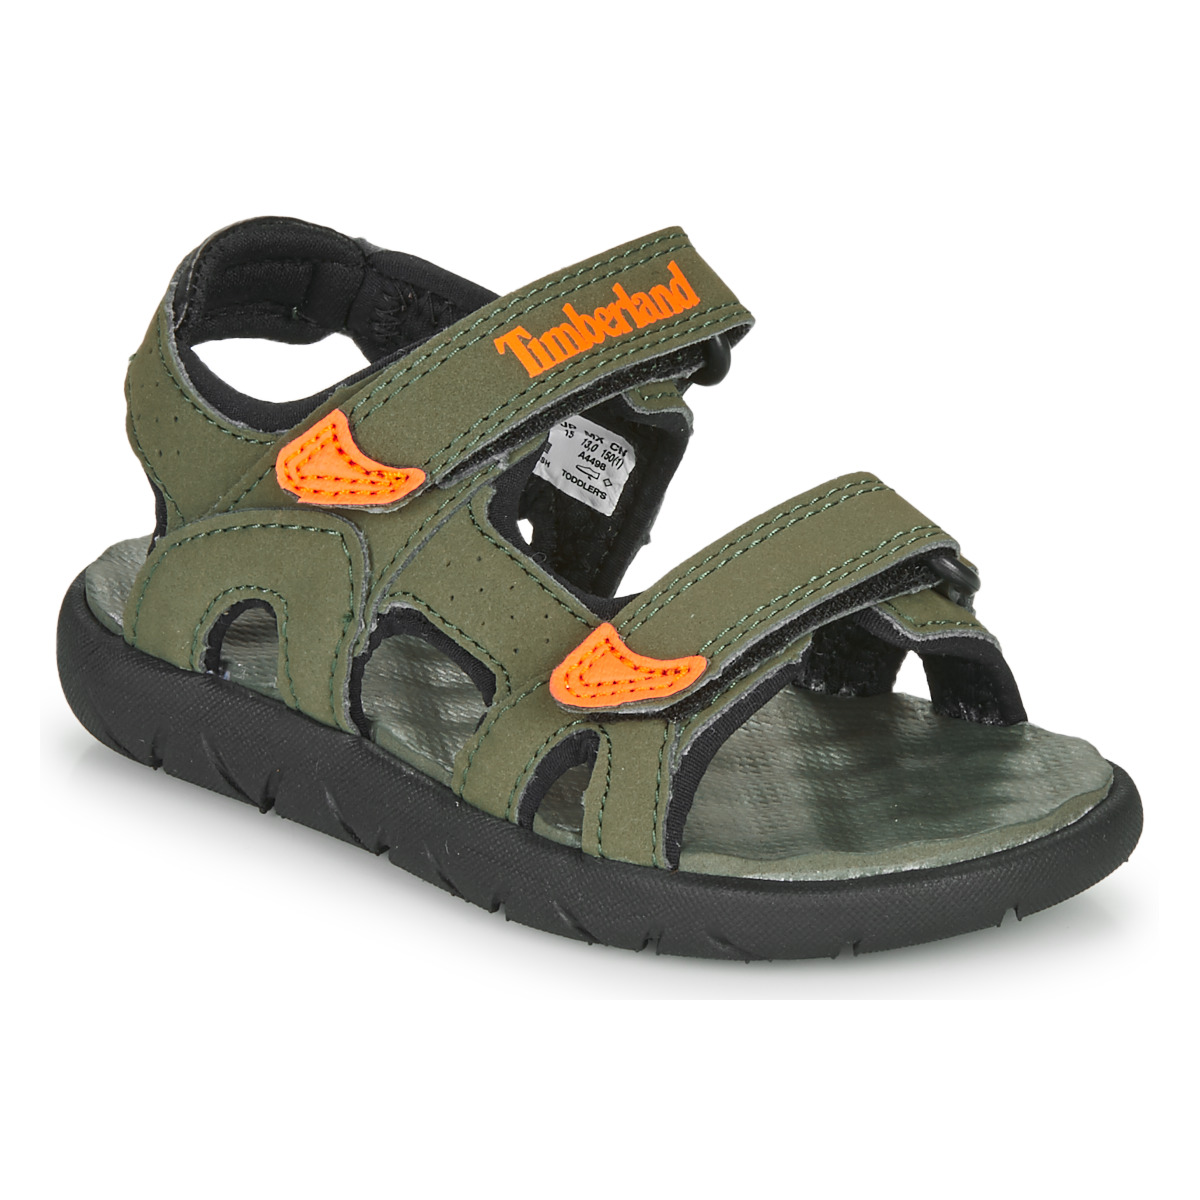 Παπούτσια Αγόρι Σανδάλια / Πέδιλα Timberland PERKINS ROW 2-STRAP Green / Orange